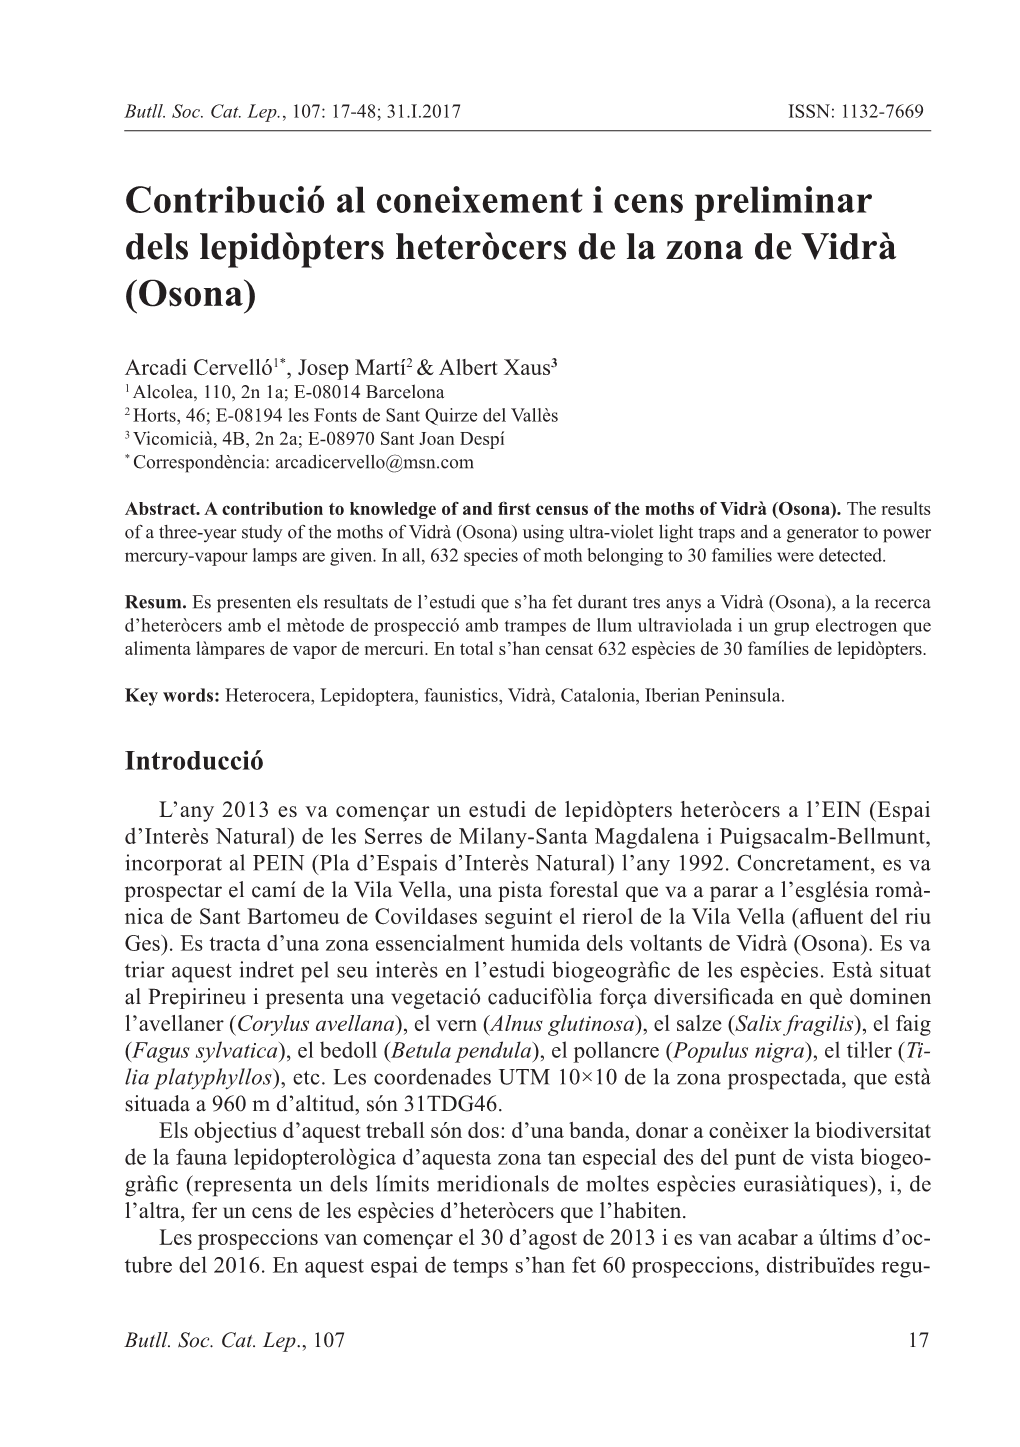 Contribució Al Coneixement I Cens Preliminar Dels Lepidòpters Heteròcers De La Zona De Vidrà (Osona)